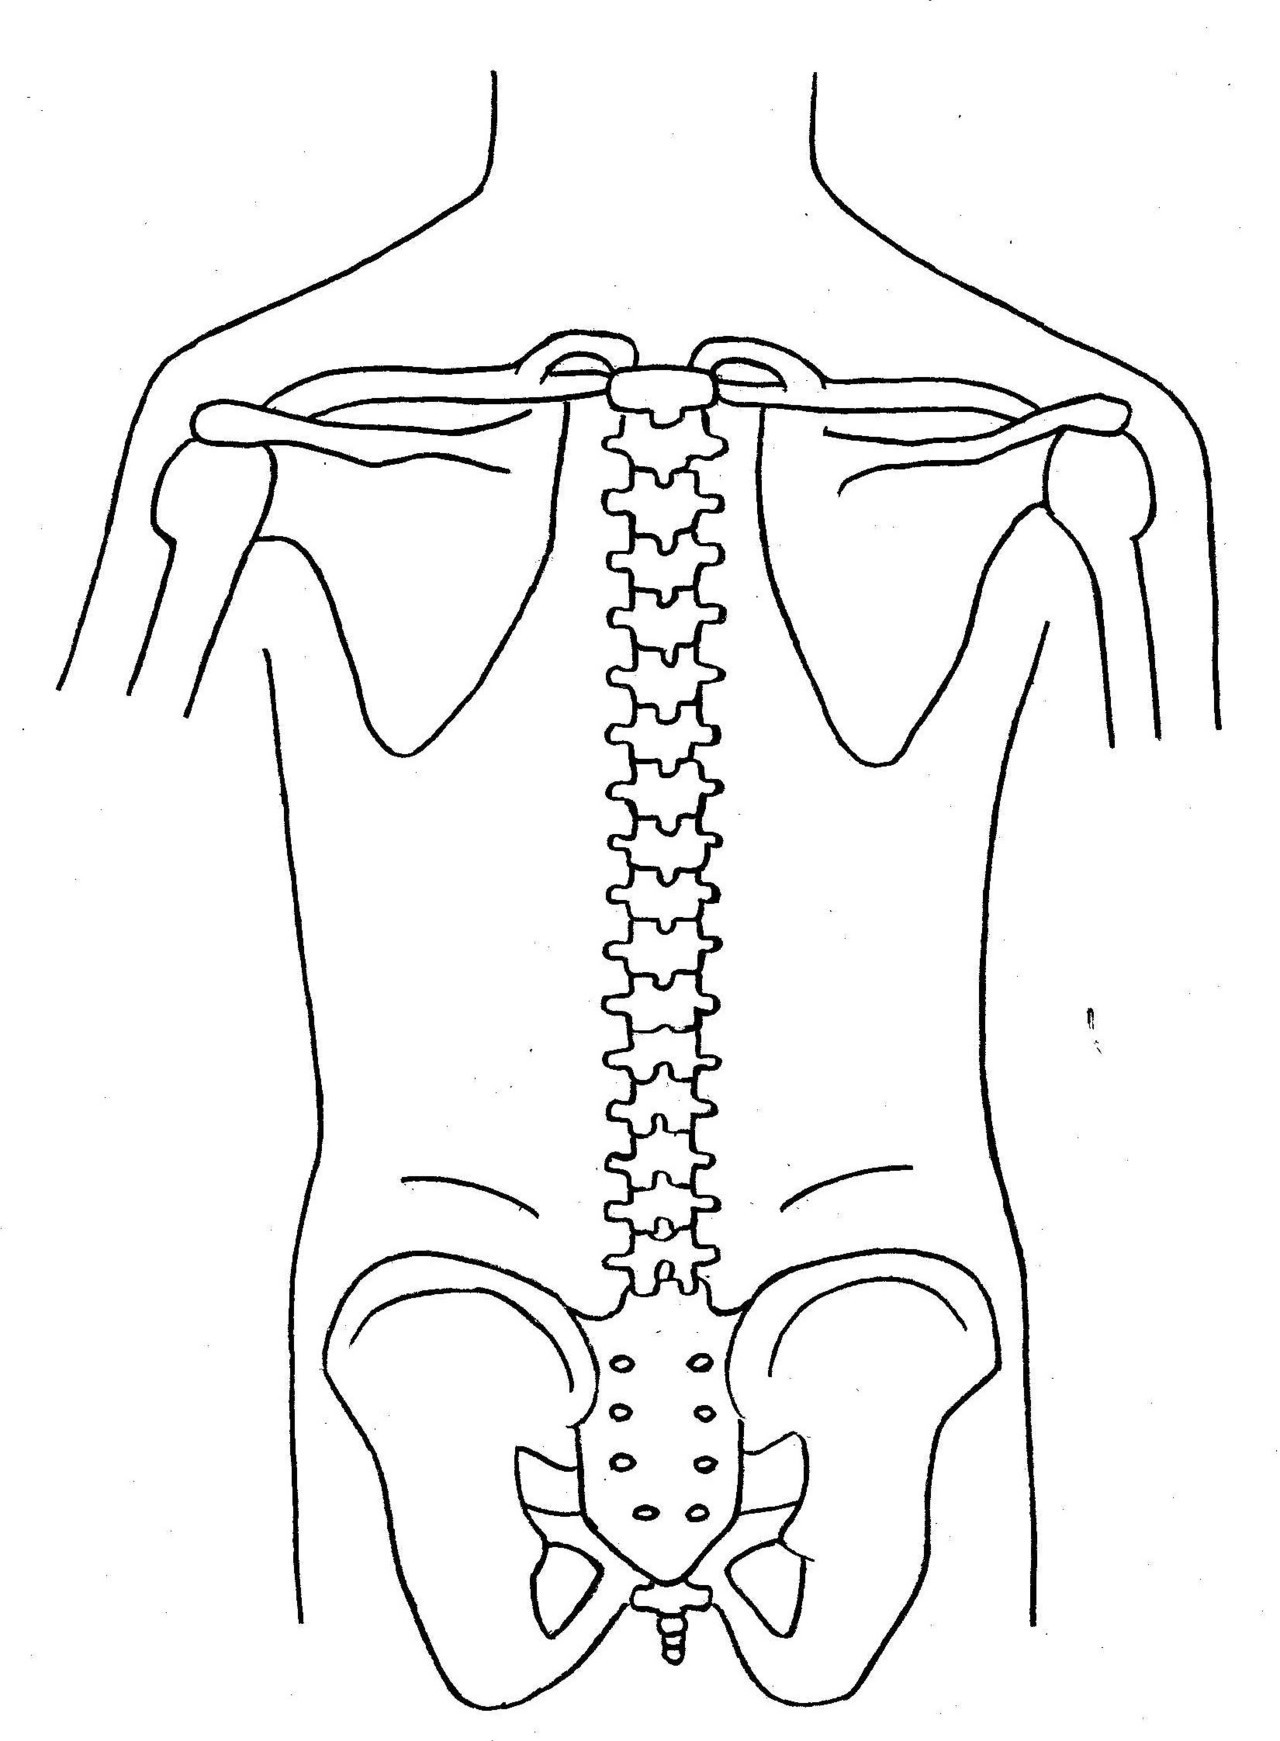 背骨の骨格